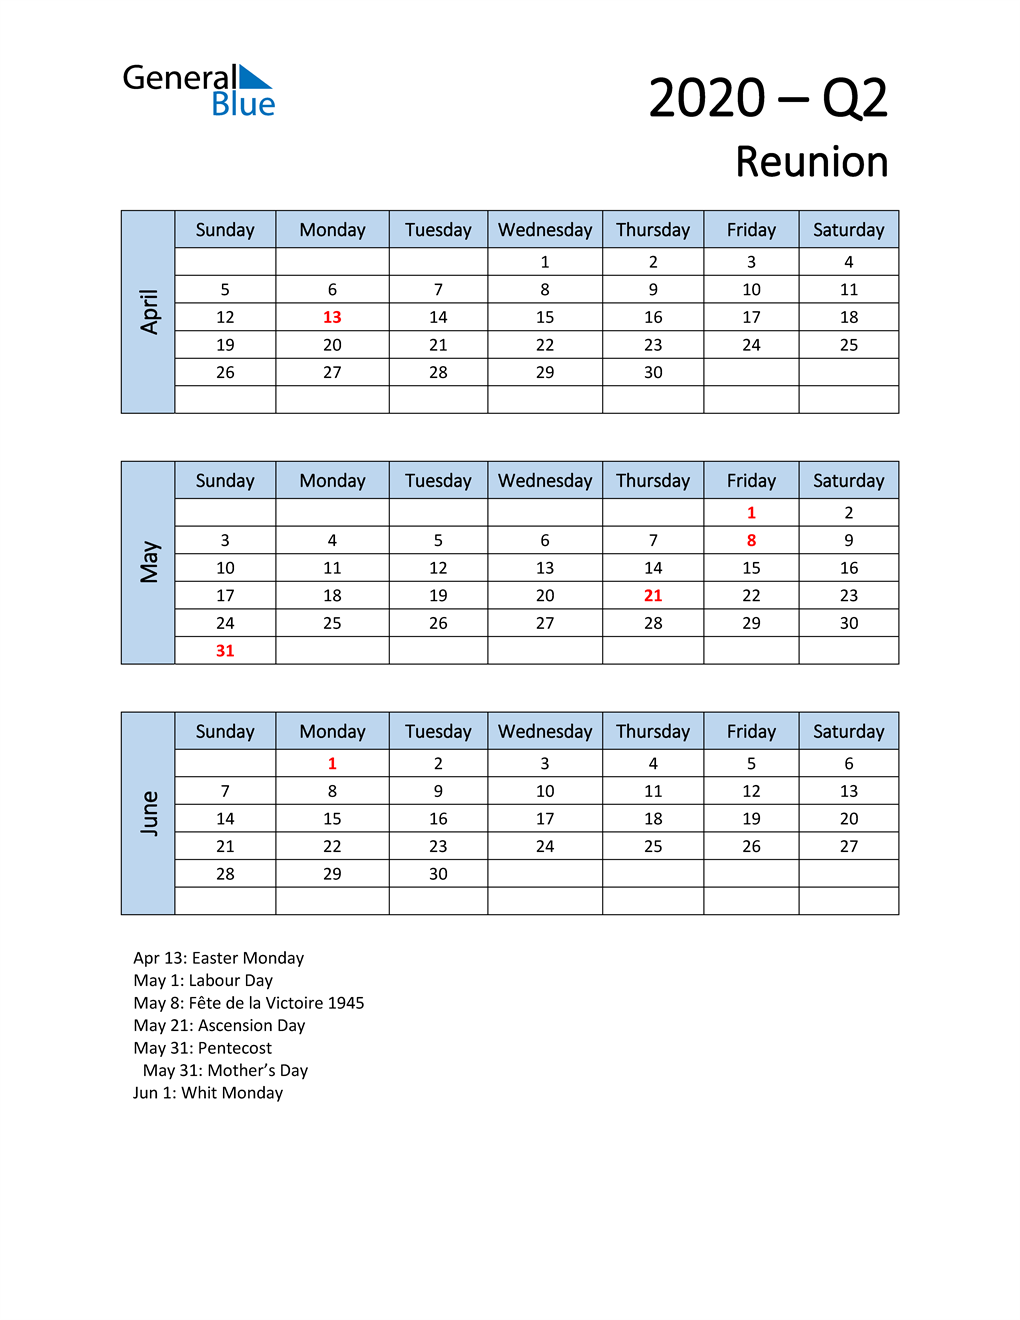  Free Q2 2020 Calendar for Reunion